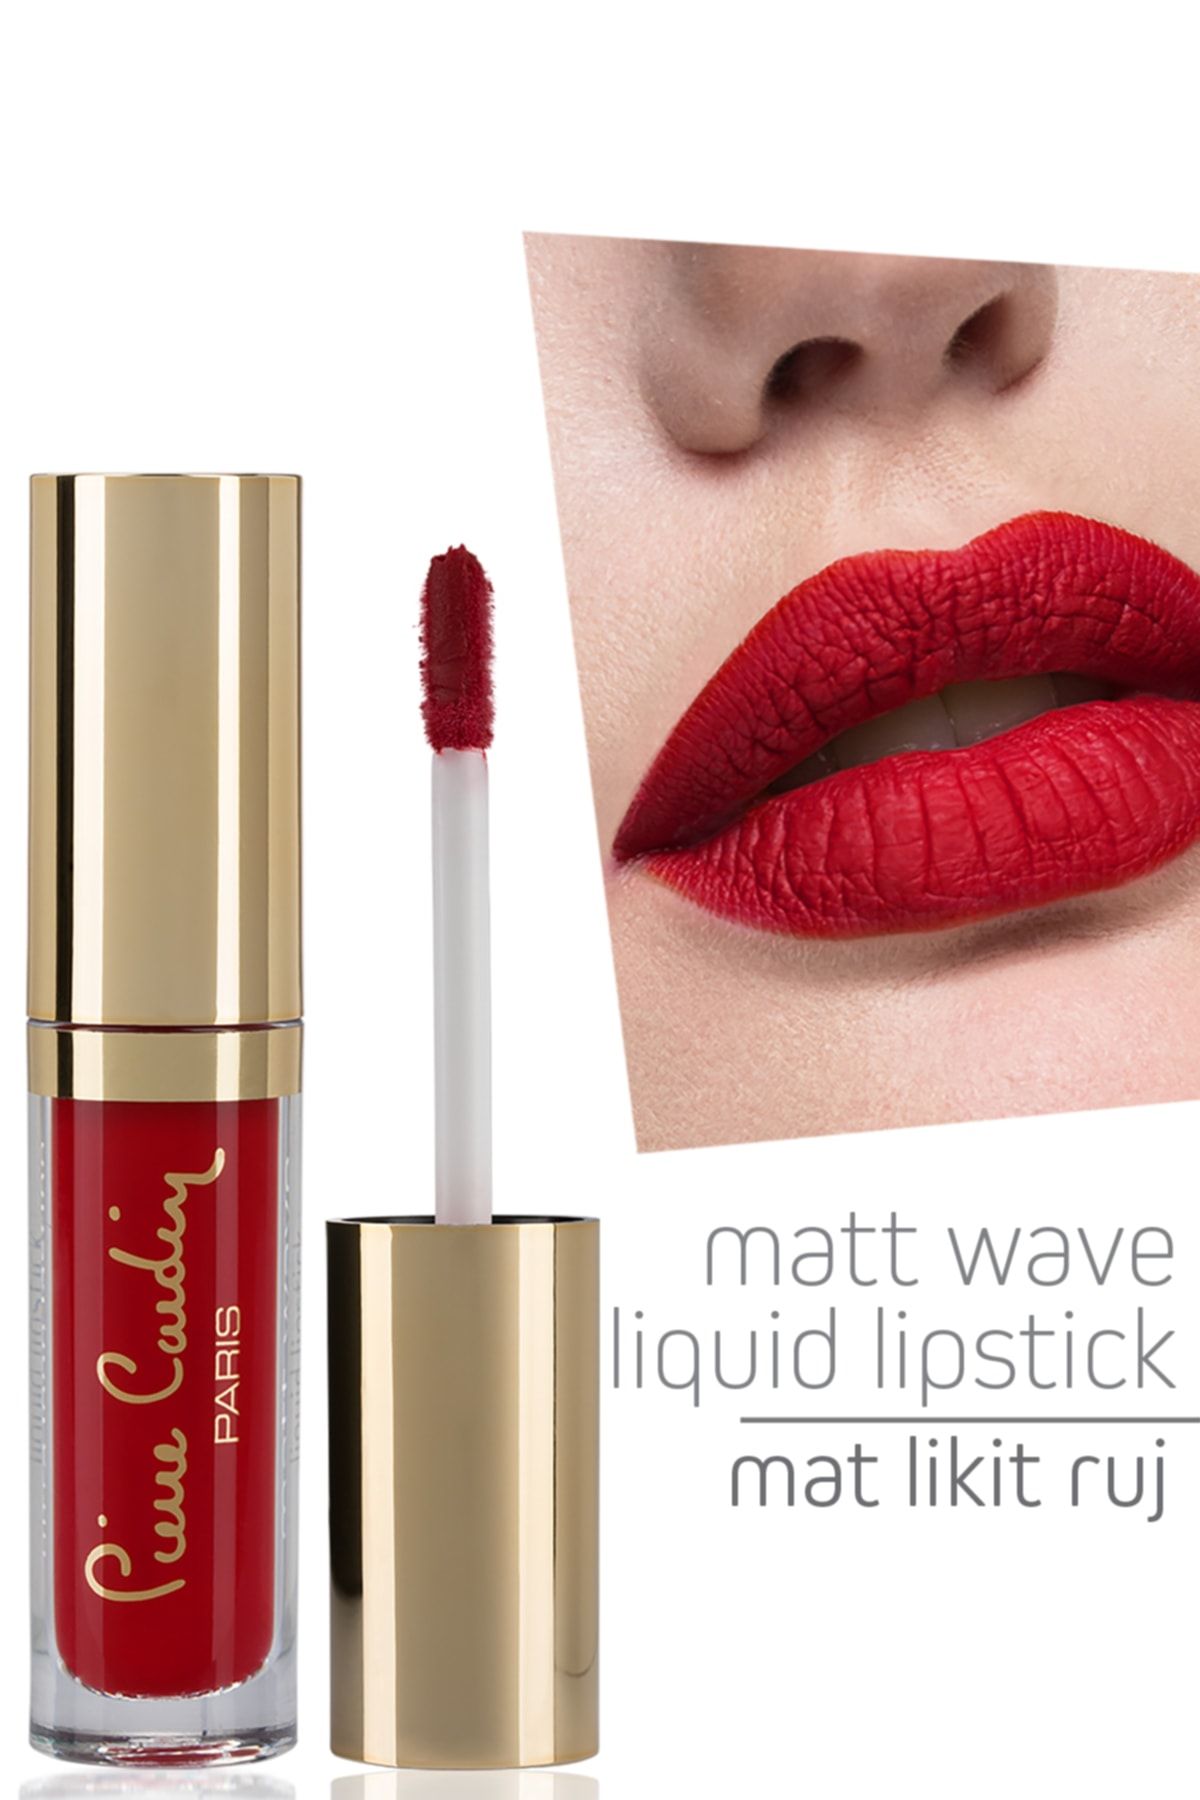 Pierre Cardin Matt Wave Liquid Lipstick – Mat Likit Ruj - Carmine